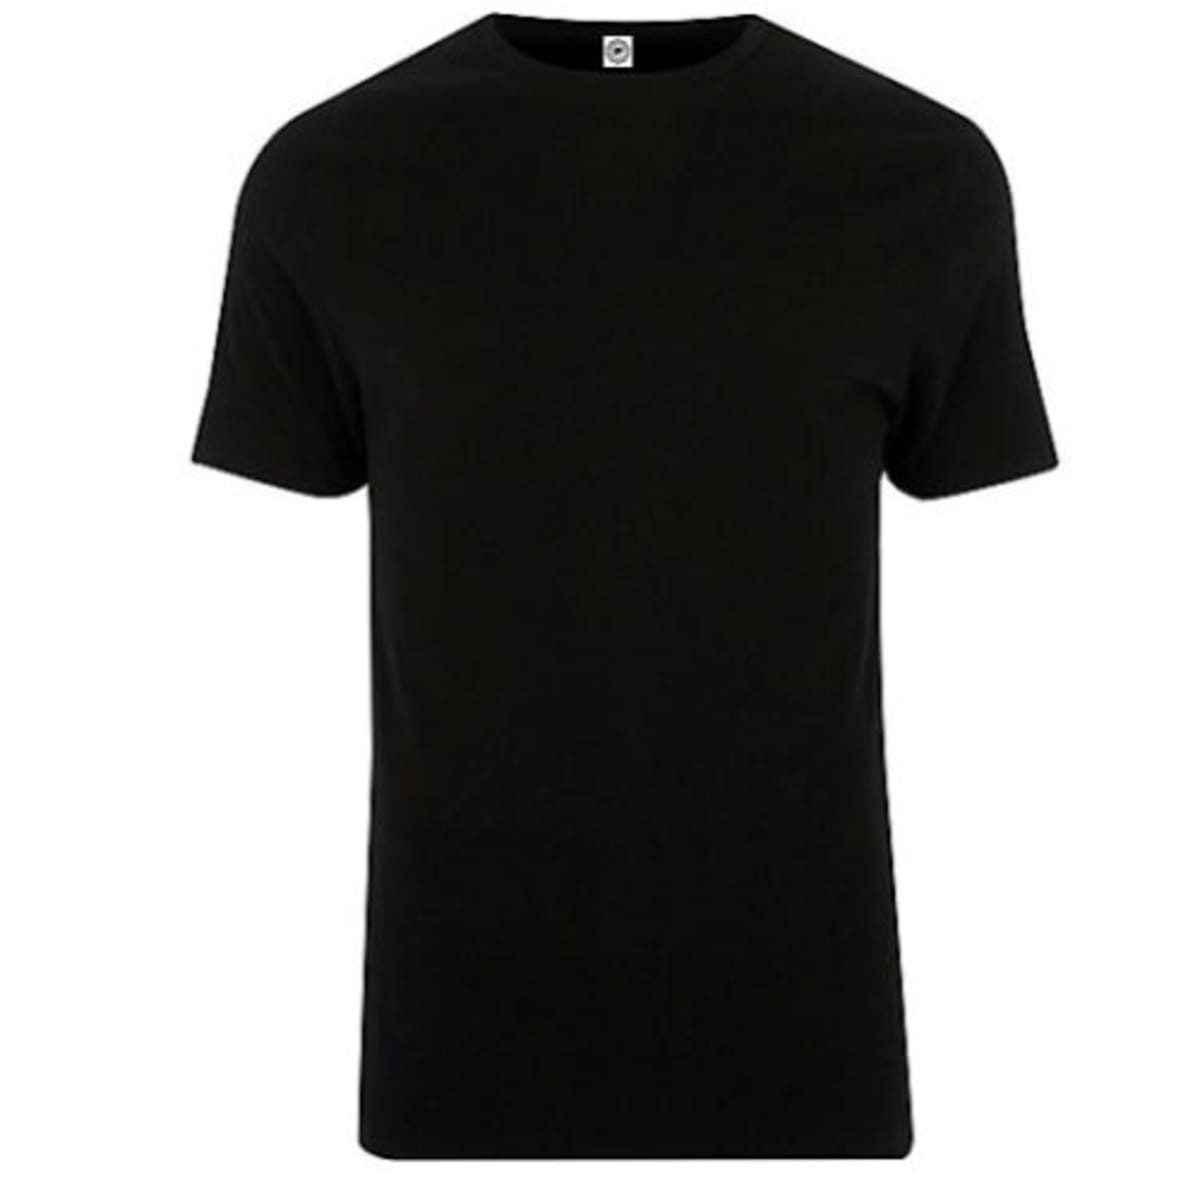 Men's Plain T-shirt - Black | Konga Online